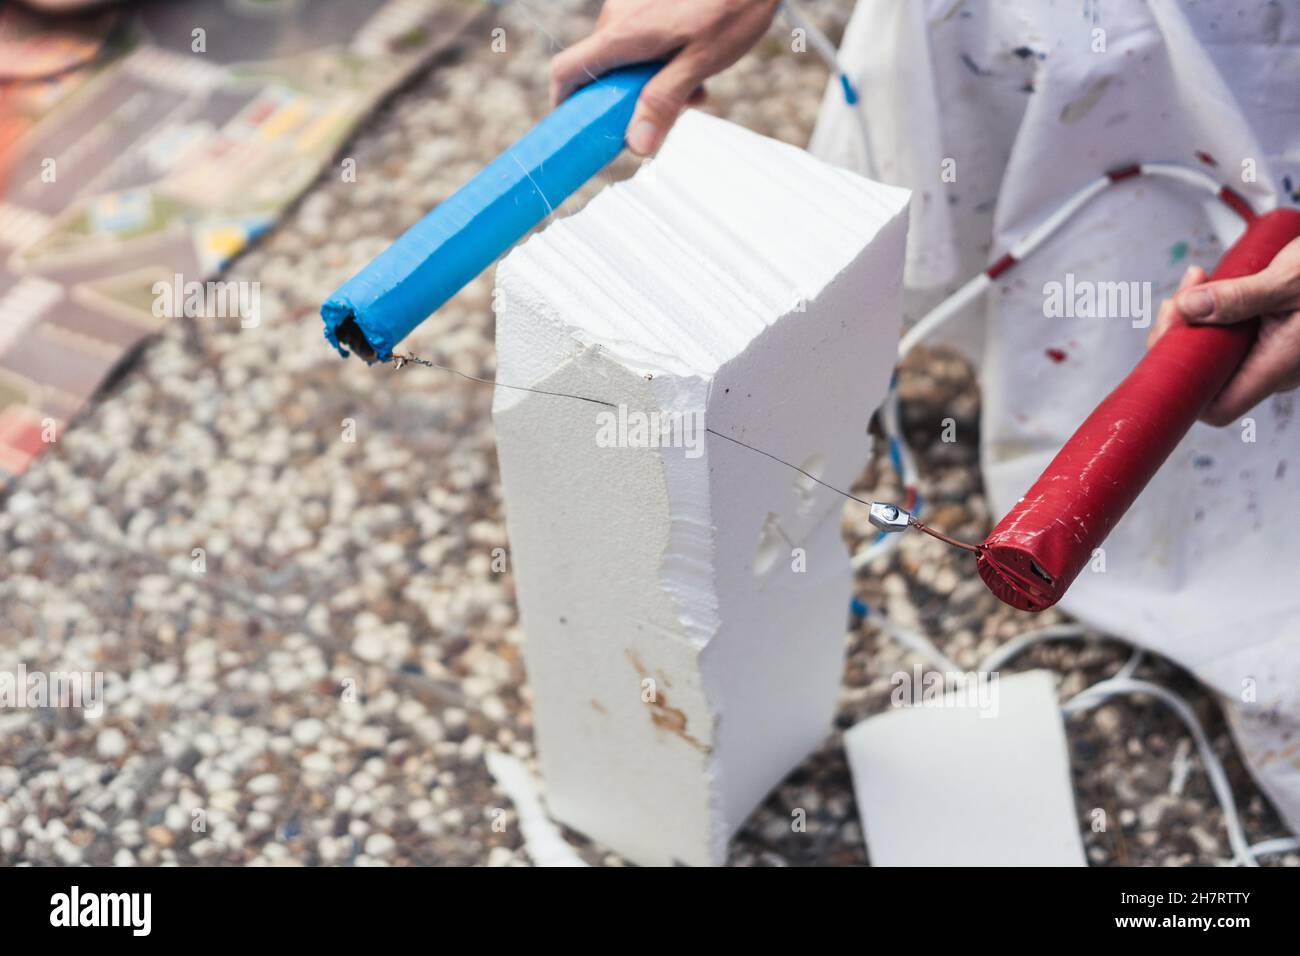 Frau hackt einen Block aus Polystyrol mit einem heißen Stahlkabel im Freien Stockfoto